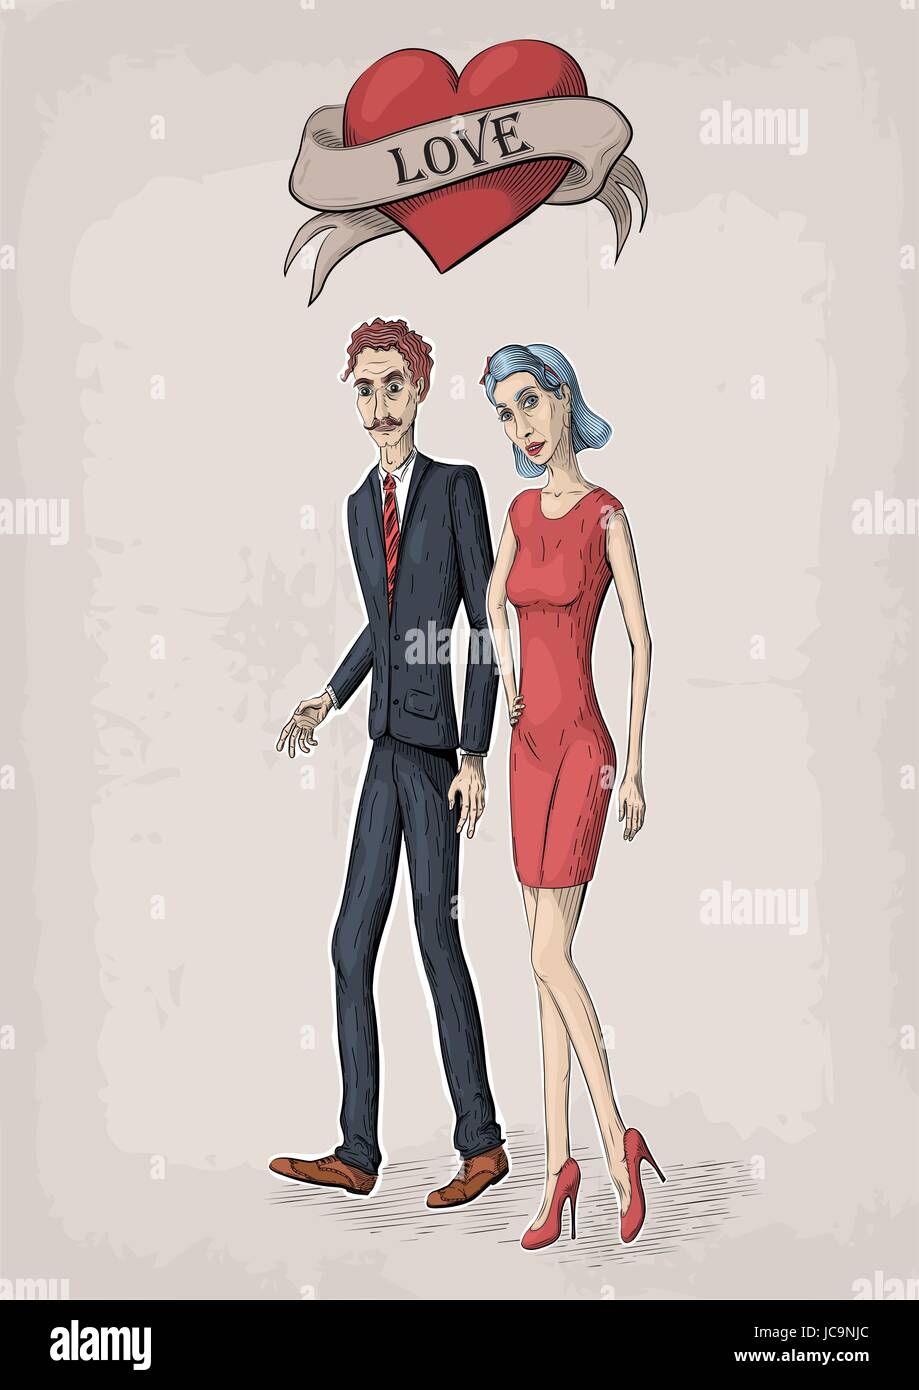 Vektor Vintage Valentine Farbe Abbildung des Paares in der Liebe junge Männer mit schönen Frau im roten Kleid, Herzsymbol, mit Aufschrift Liebe zu unterzeichnen. Stock Vektor